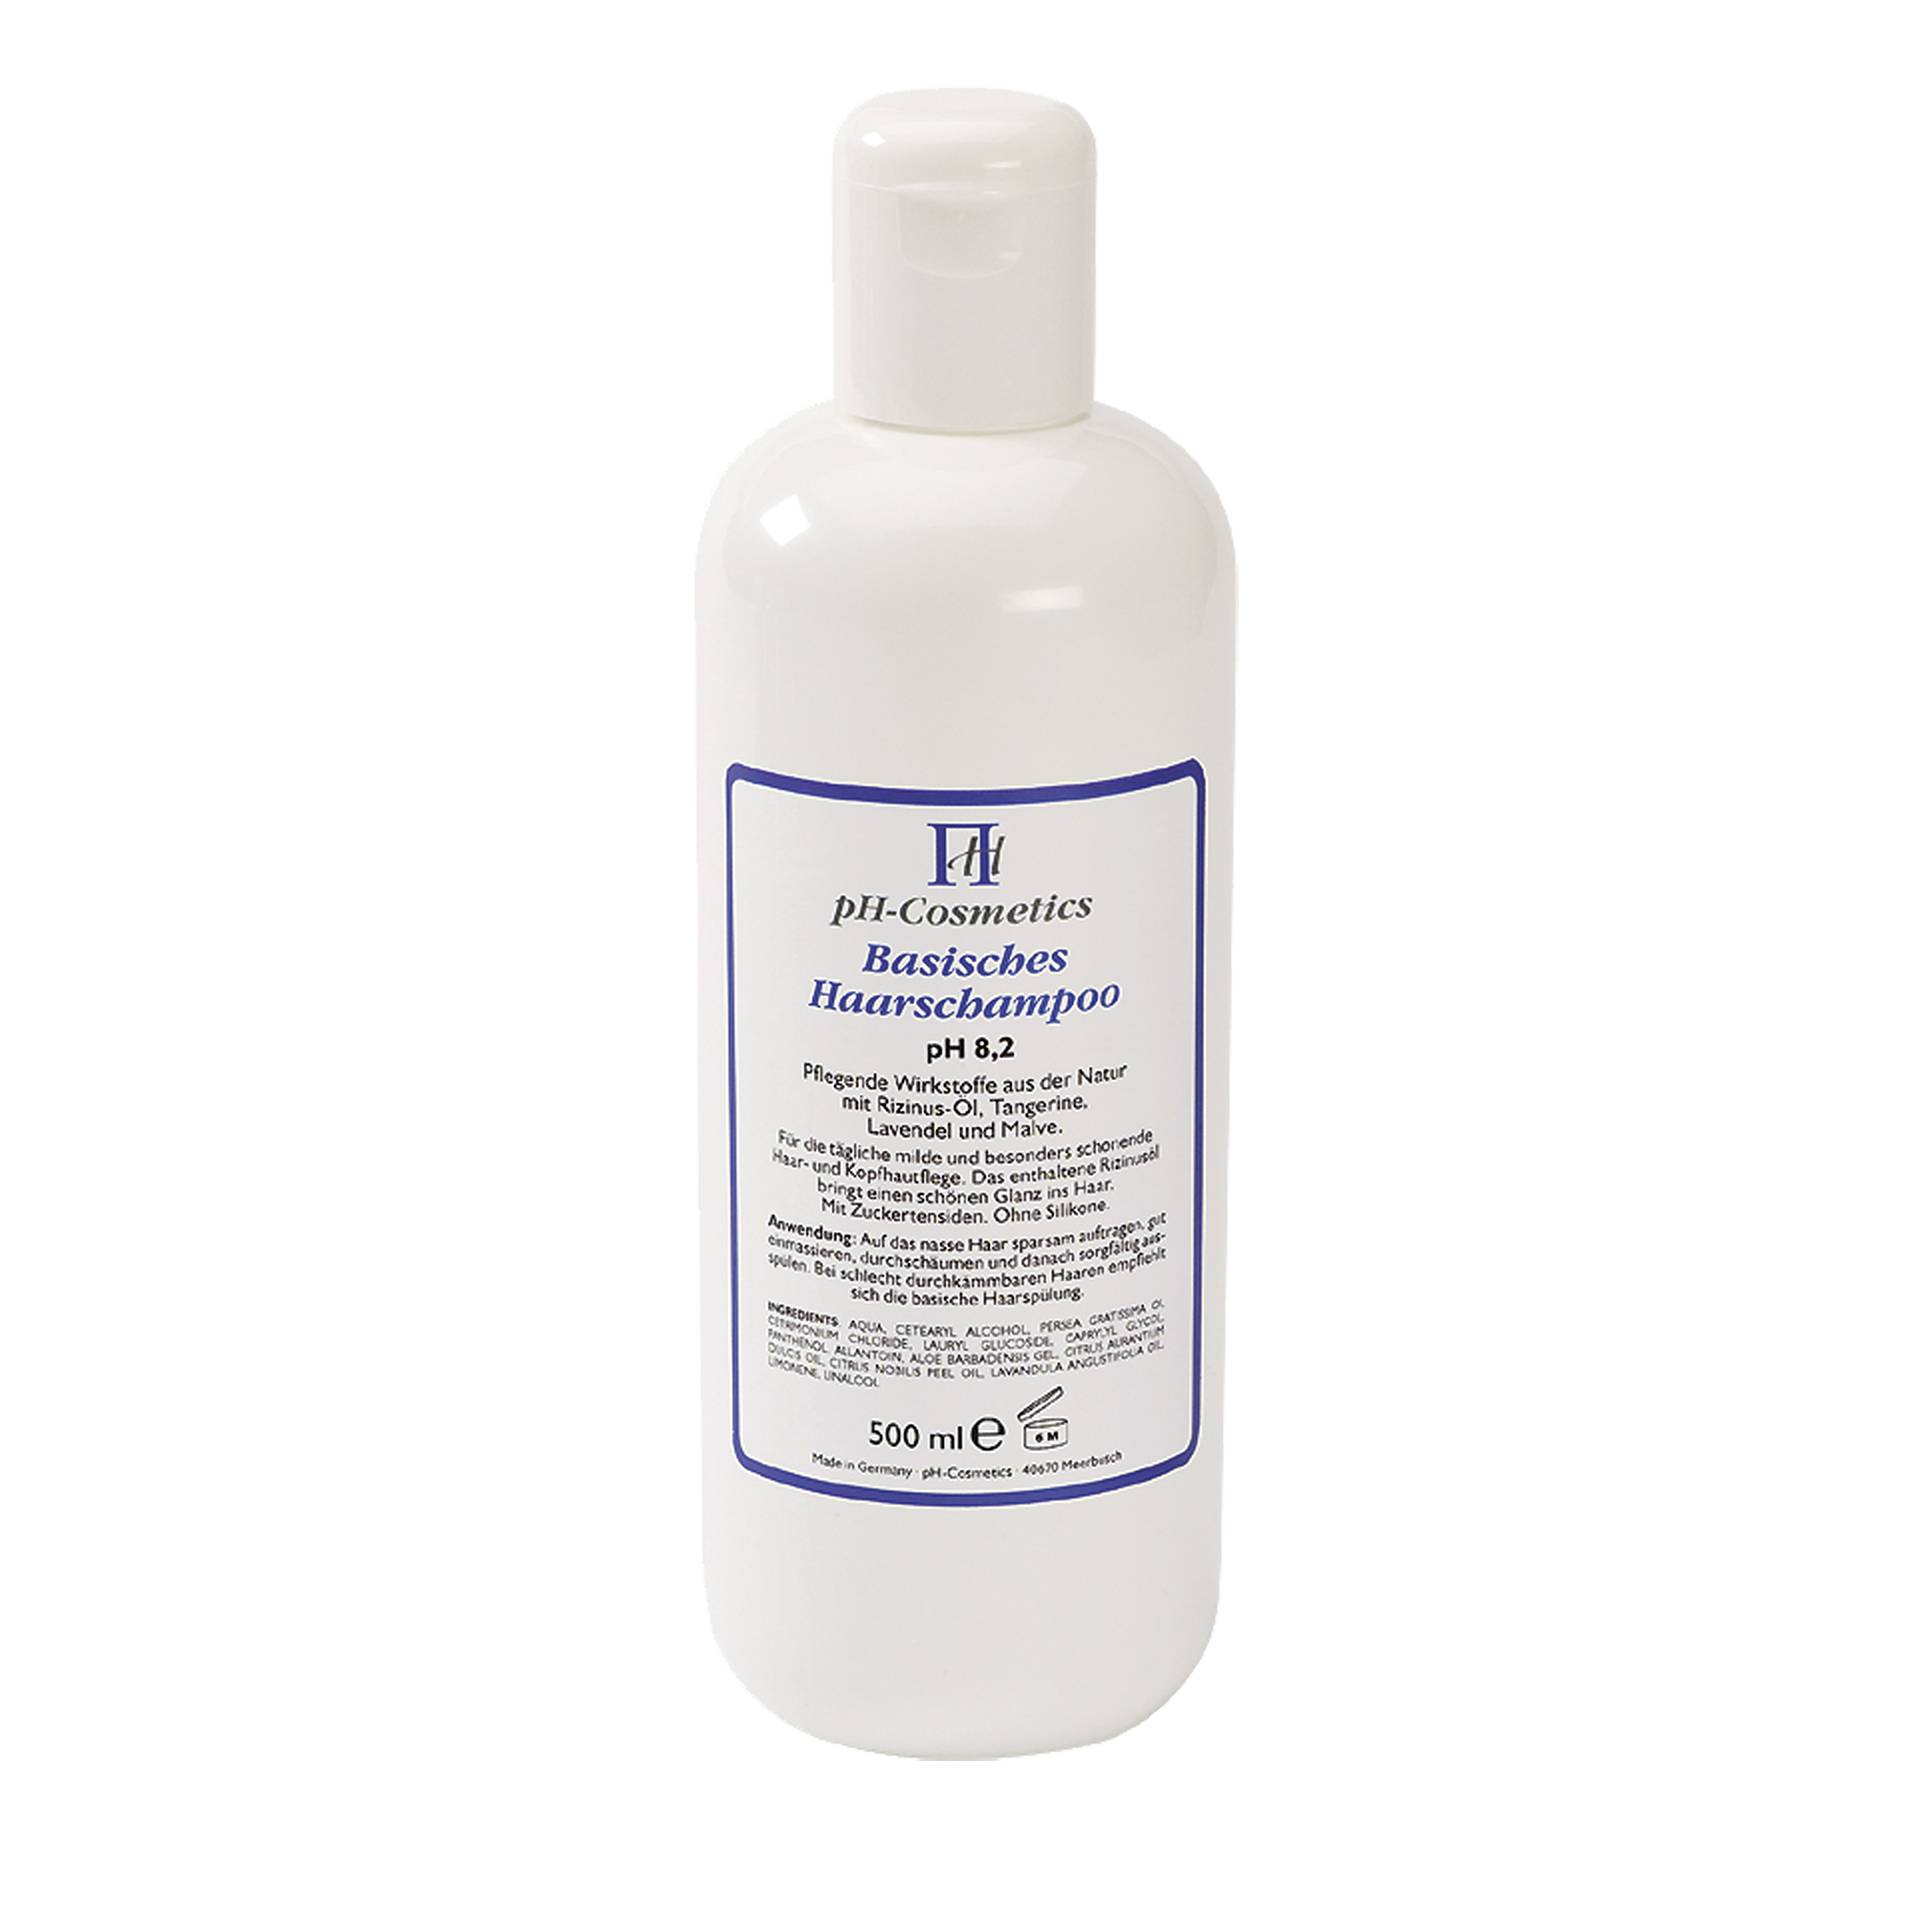 pH-Cosmetics Basisches Shampoo pH 8.2 500 ml - Wunderbar in Kombination mit der basischen Spülung - vegan - ph Cosmetics von ph Cosmetics